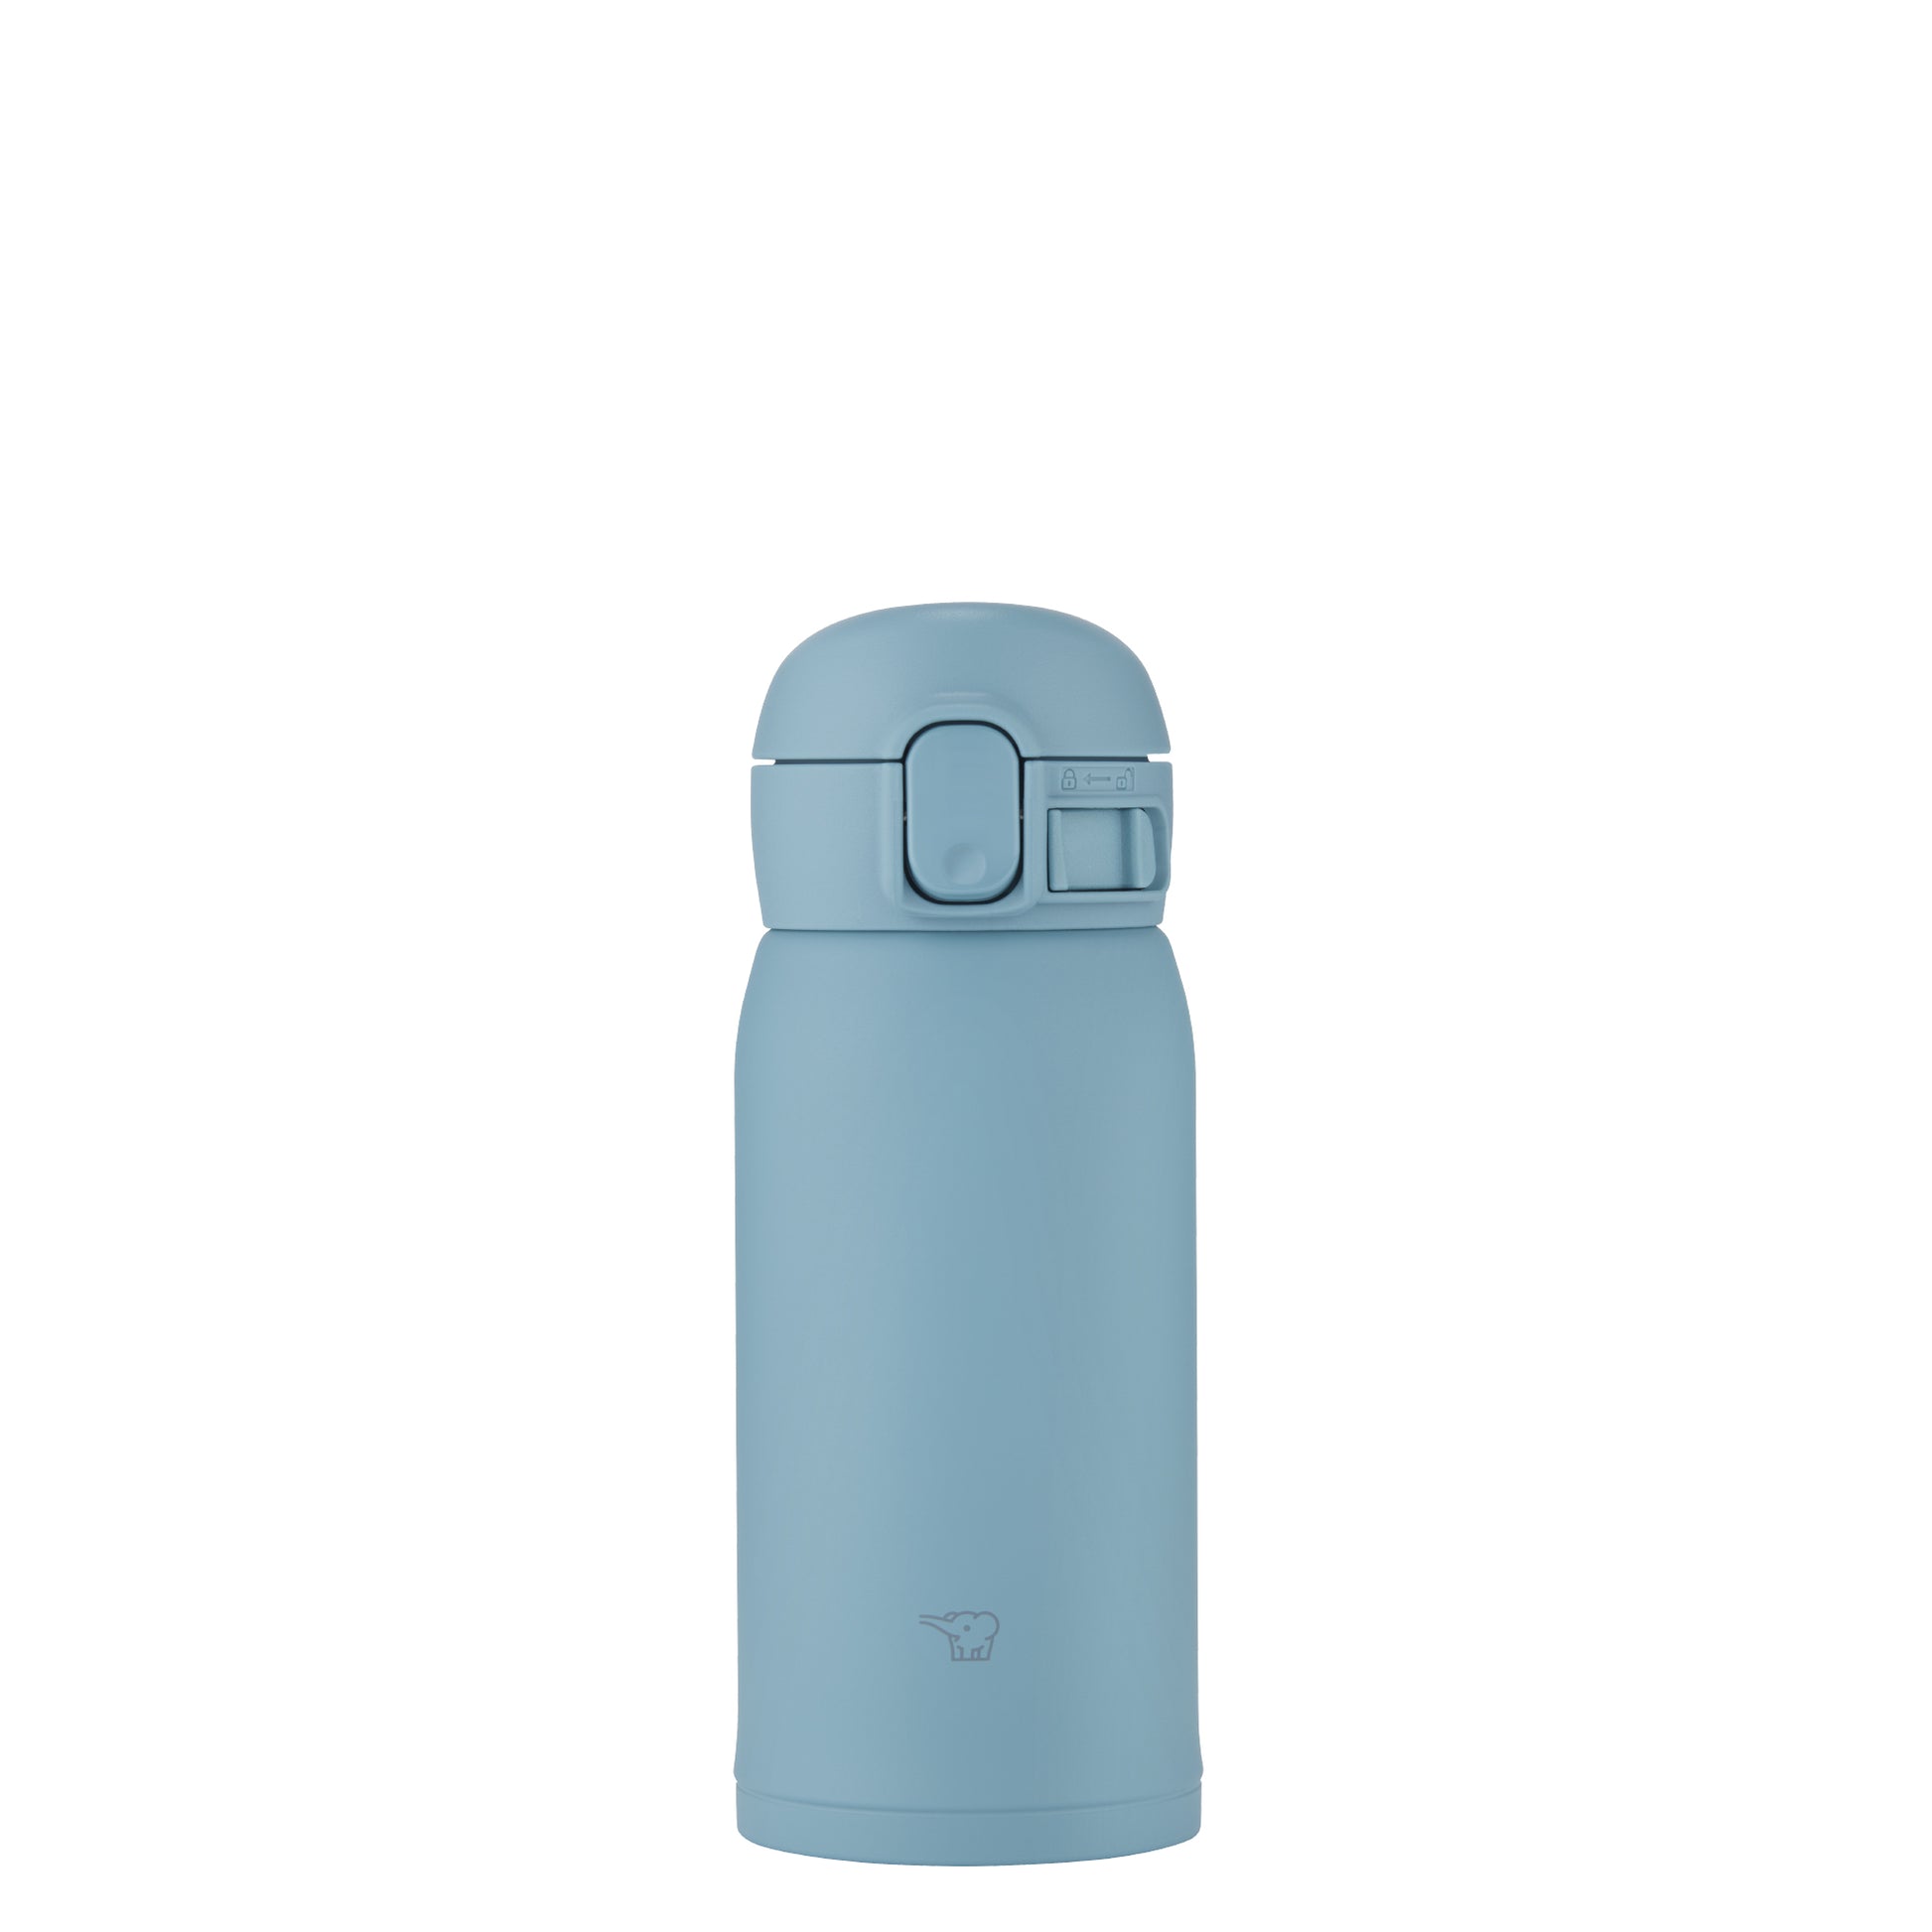 Zojirushi Sm-Wa36-Ya Water Bottle, One-Touch Stainless Steel Mug, Seamless, 1.2 fl oz (0.36 L), Lemon